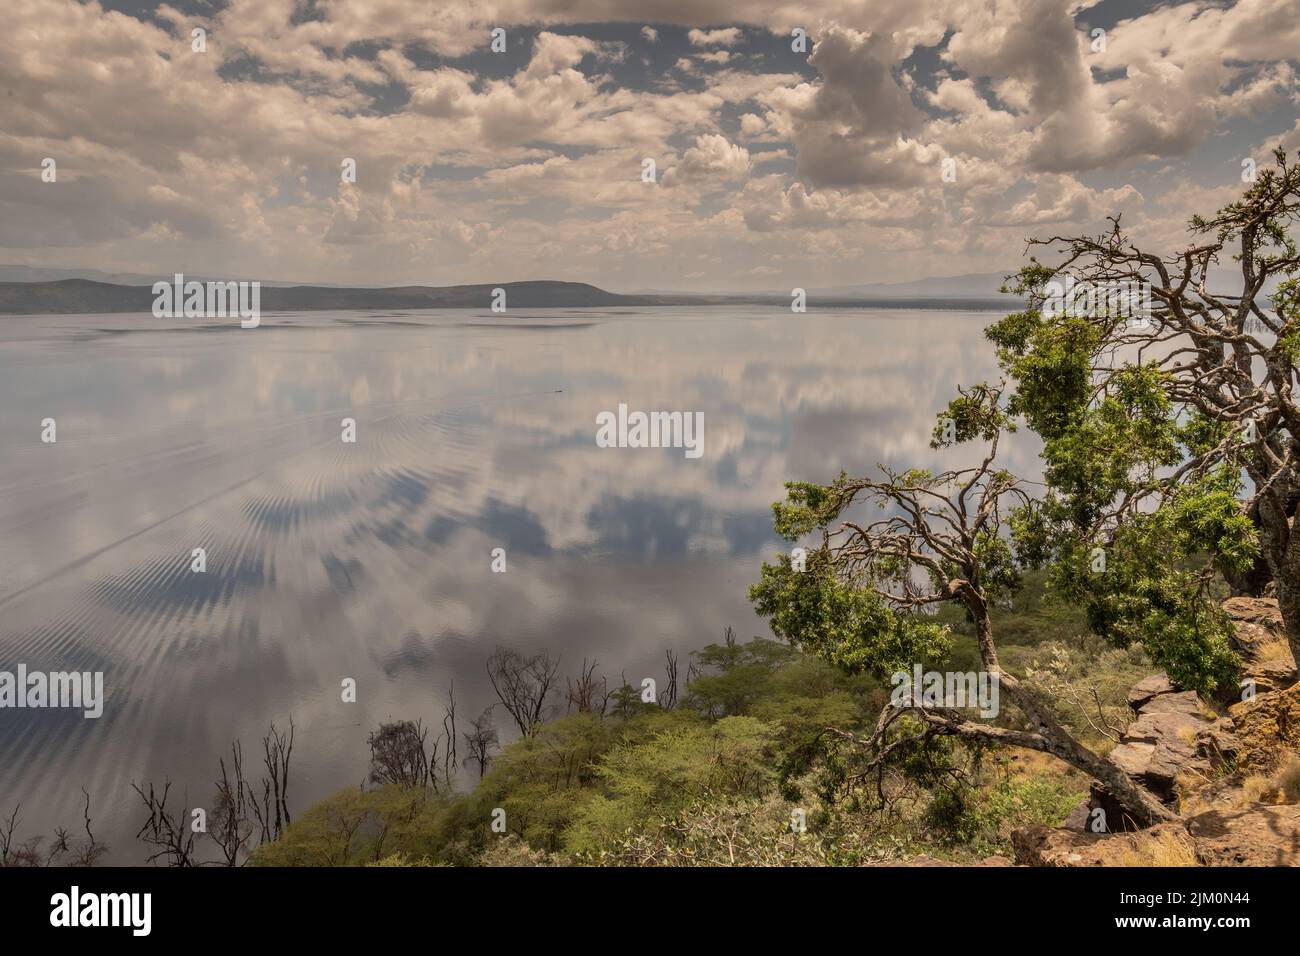 Parco Nazionale del Lago Nakuru, Kenya, Africa. Il livello dell'acqua del lago è aumentato molto negli ultimi anni per motivi geologici. Foto Stock